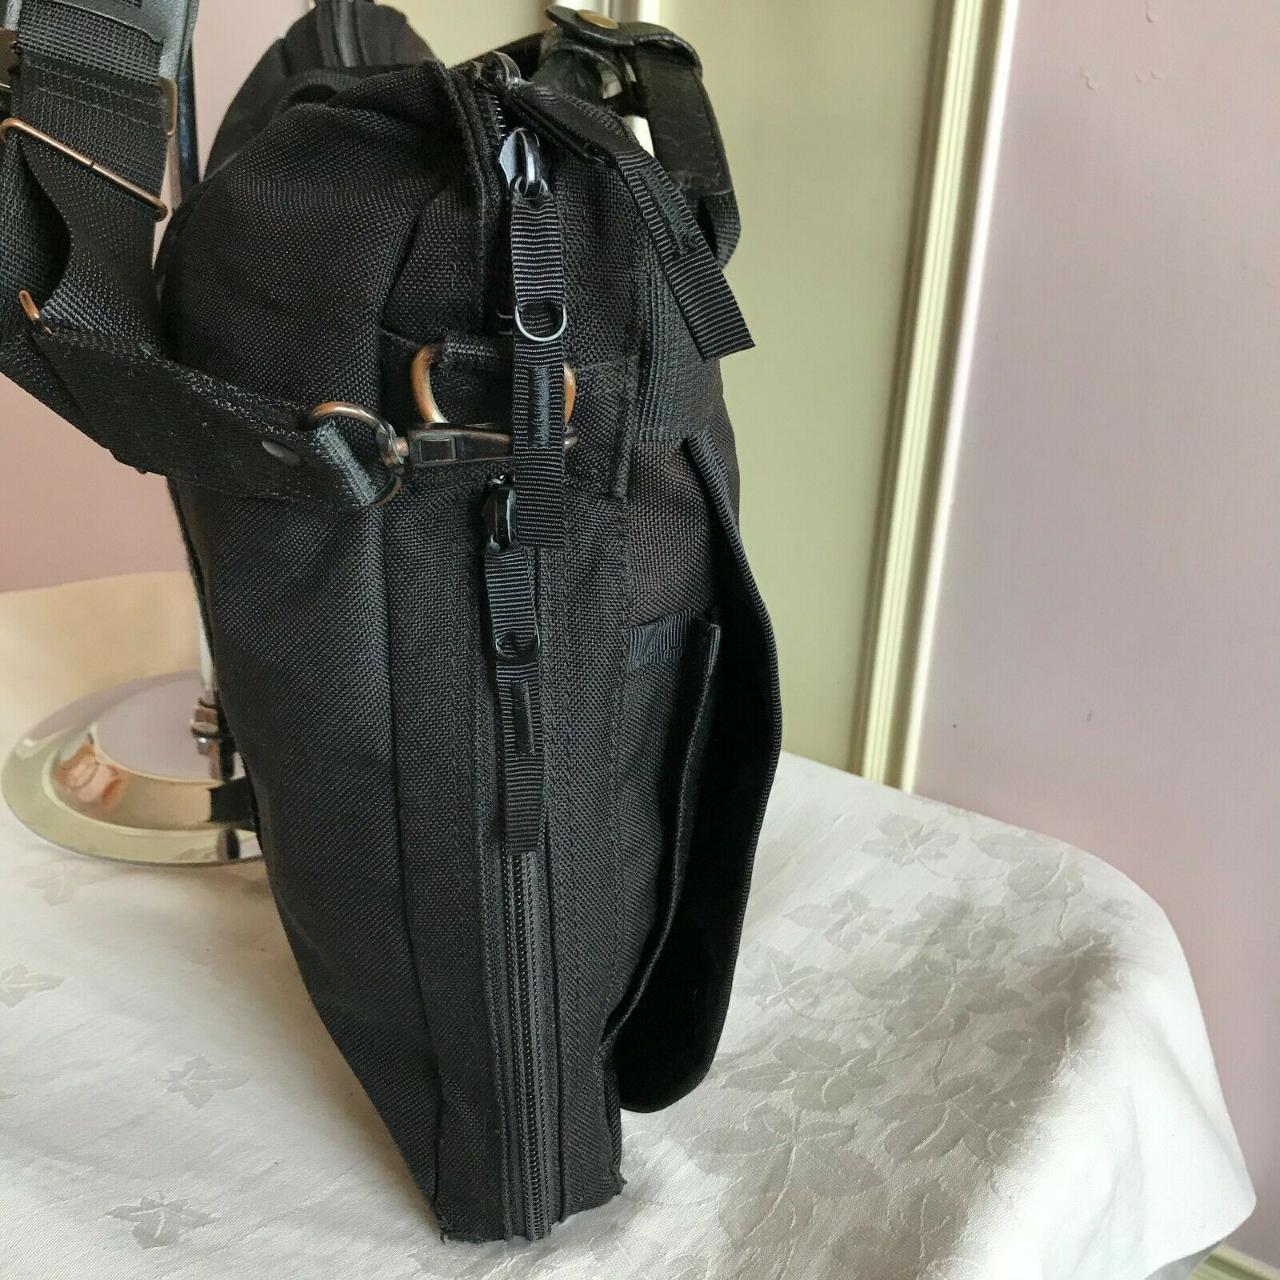 Porter Canvas Briefcase Laptop Shoulder Bag in Black... - Depop